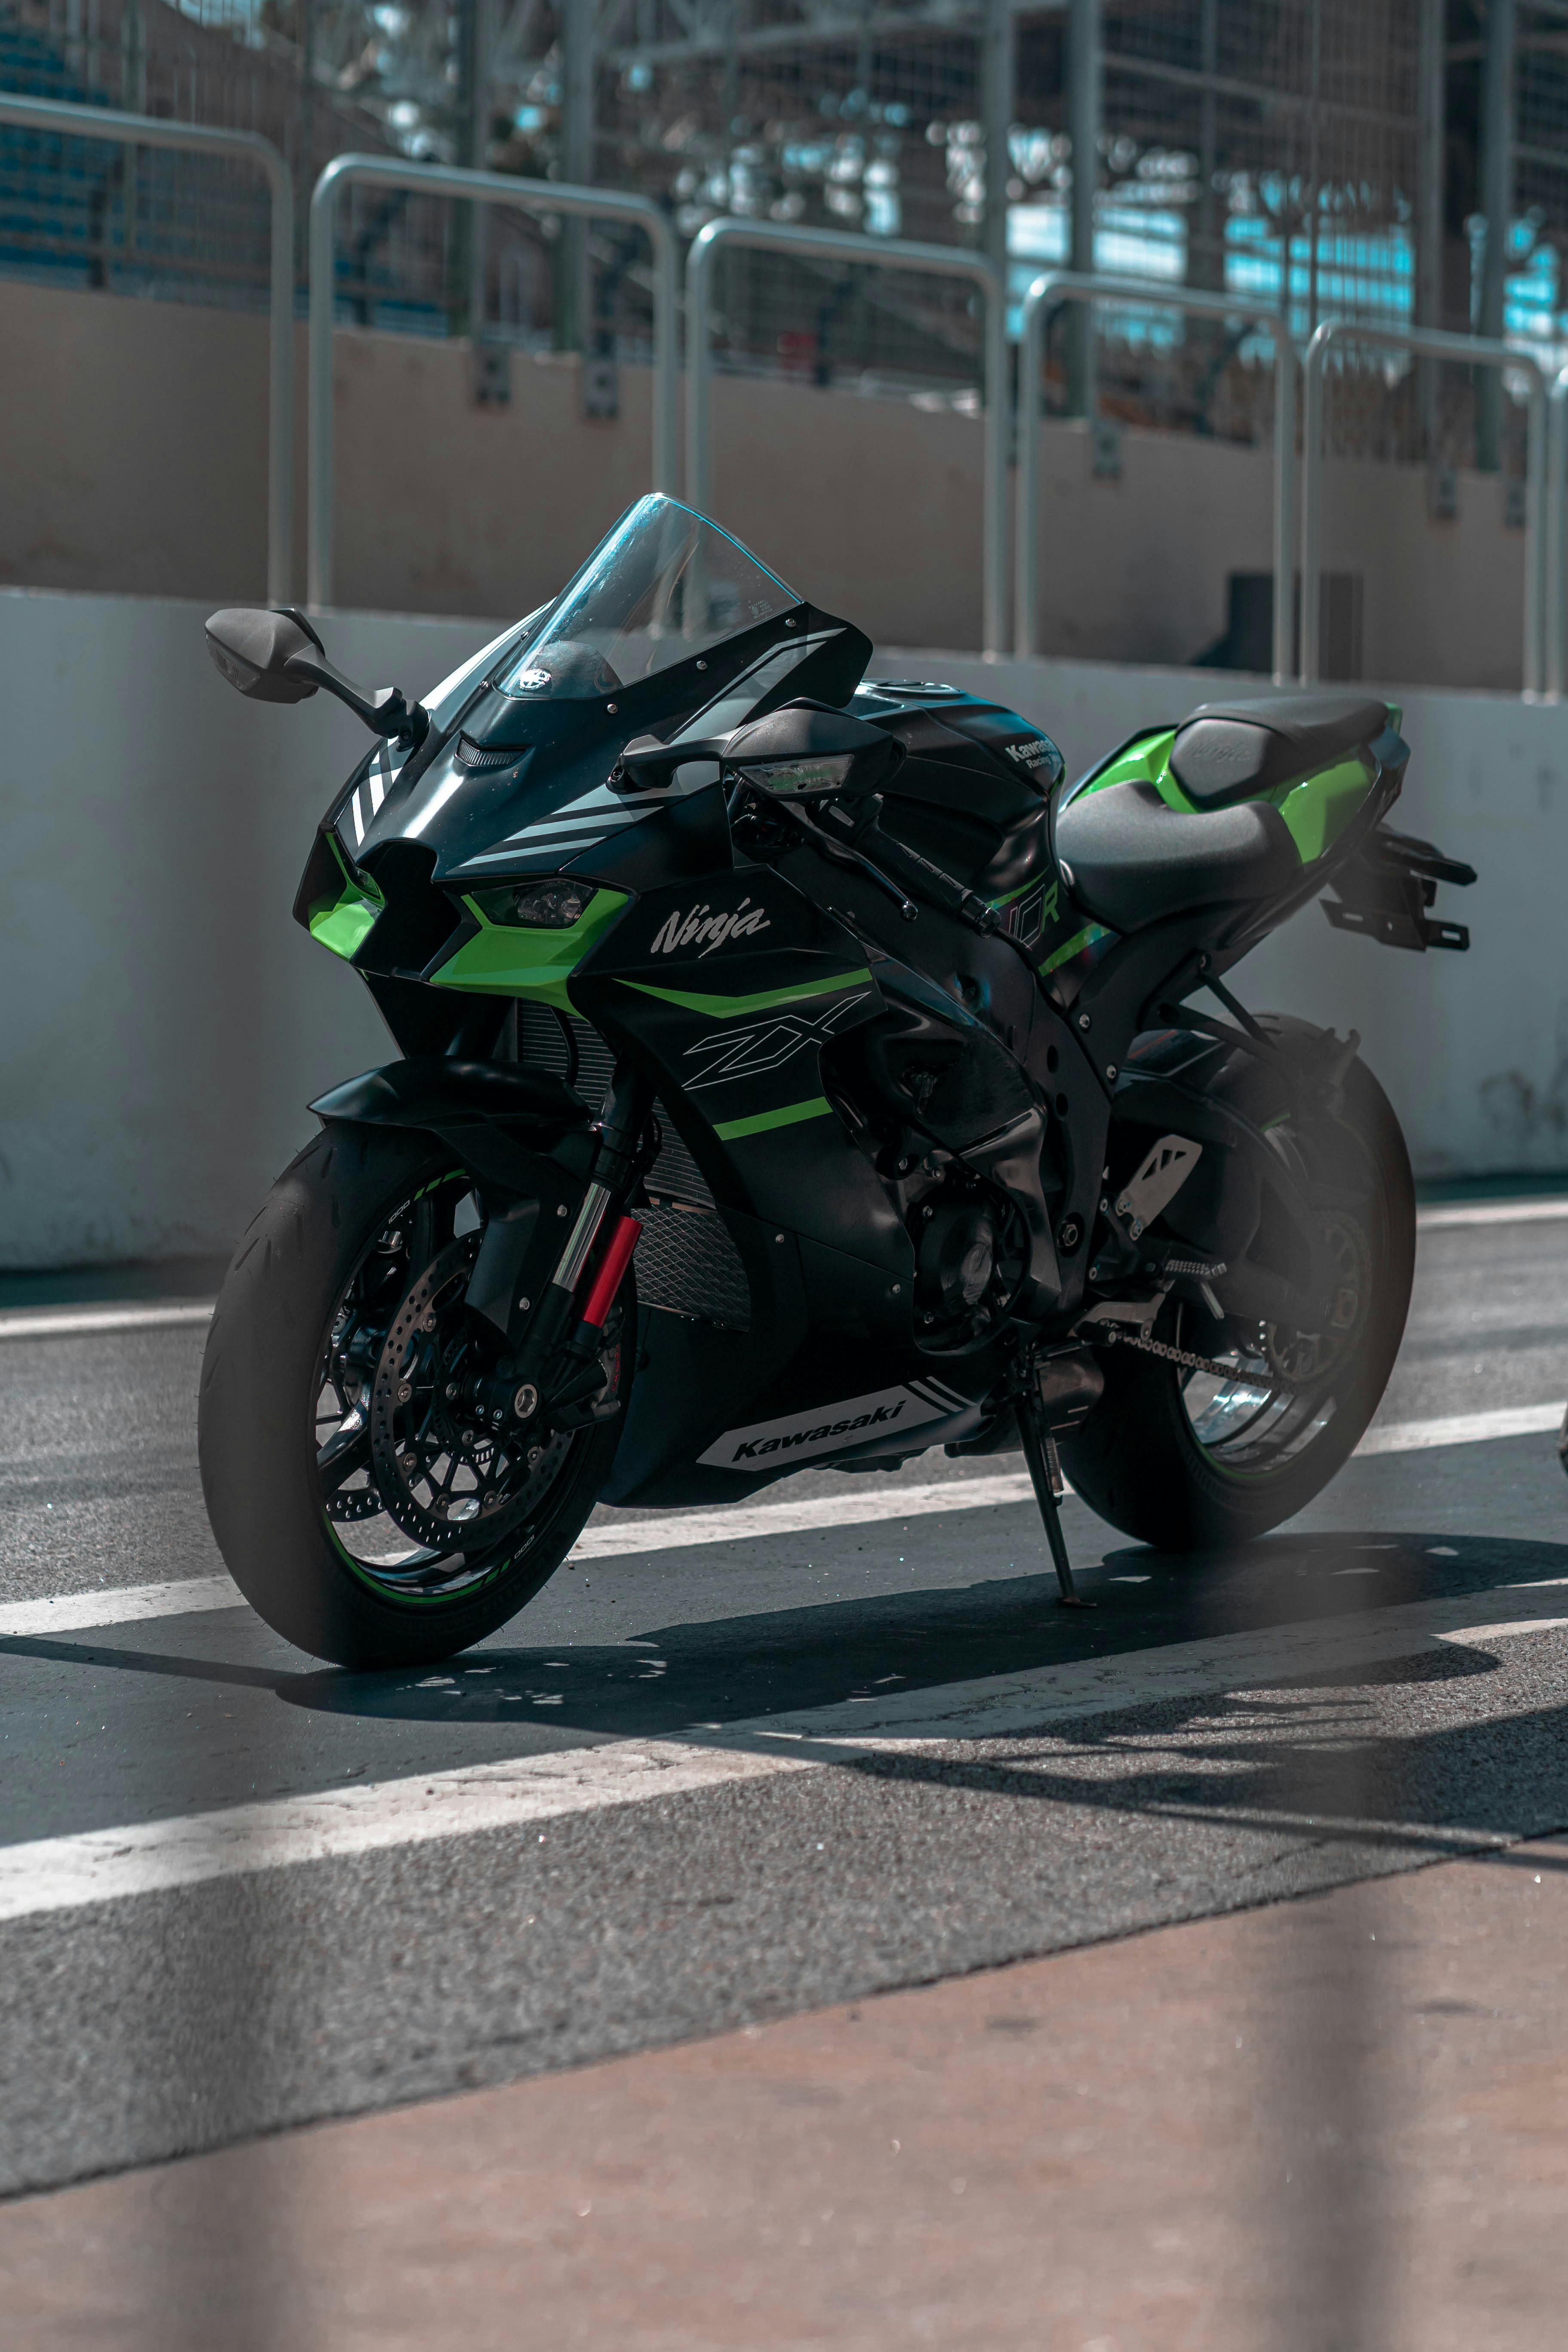 Kawasaki Ninja Photos, Download The BEST Free Kawasaki Ninja Stock Photos &  HD Images